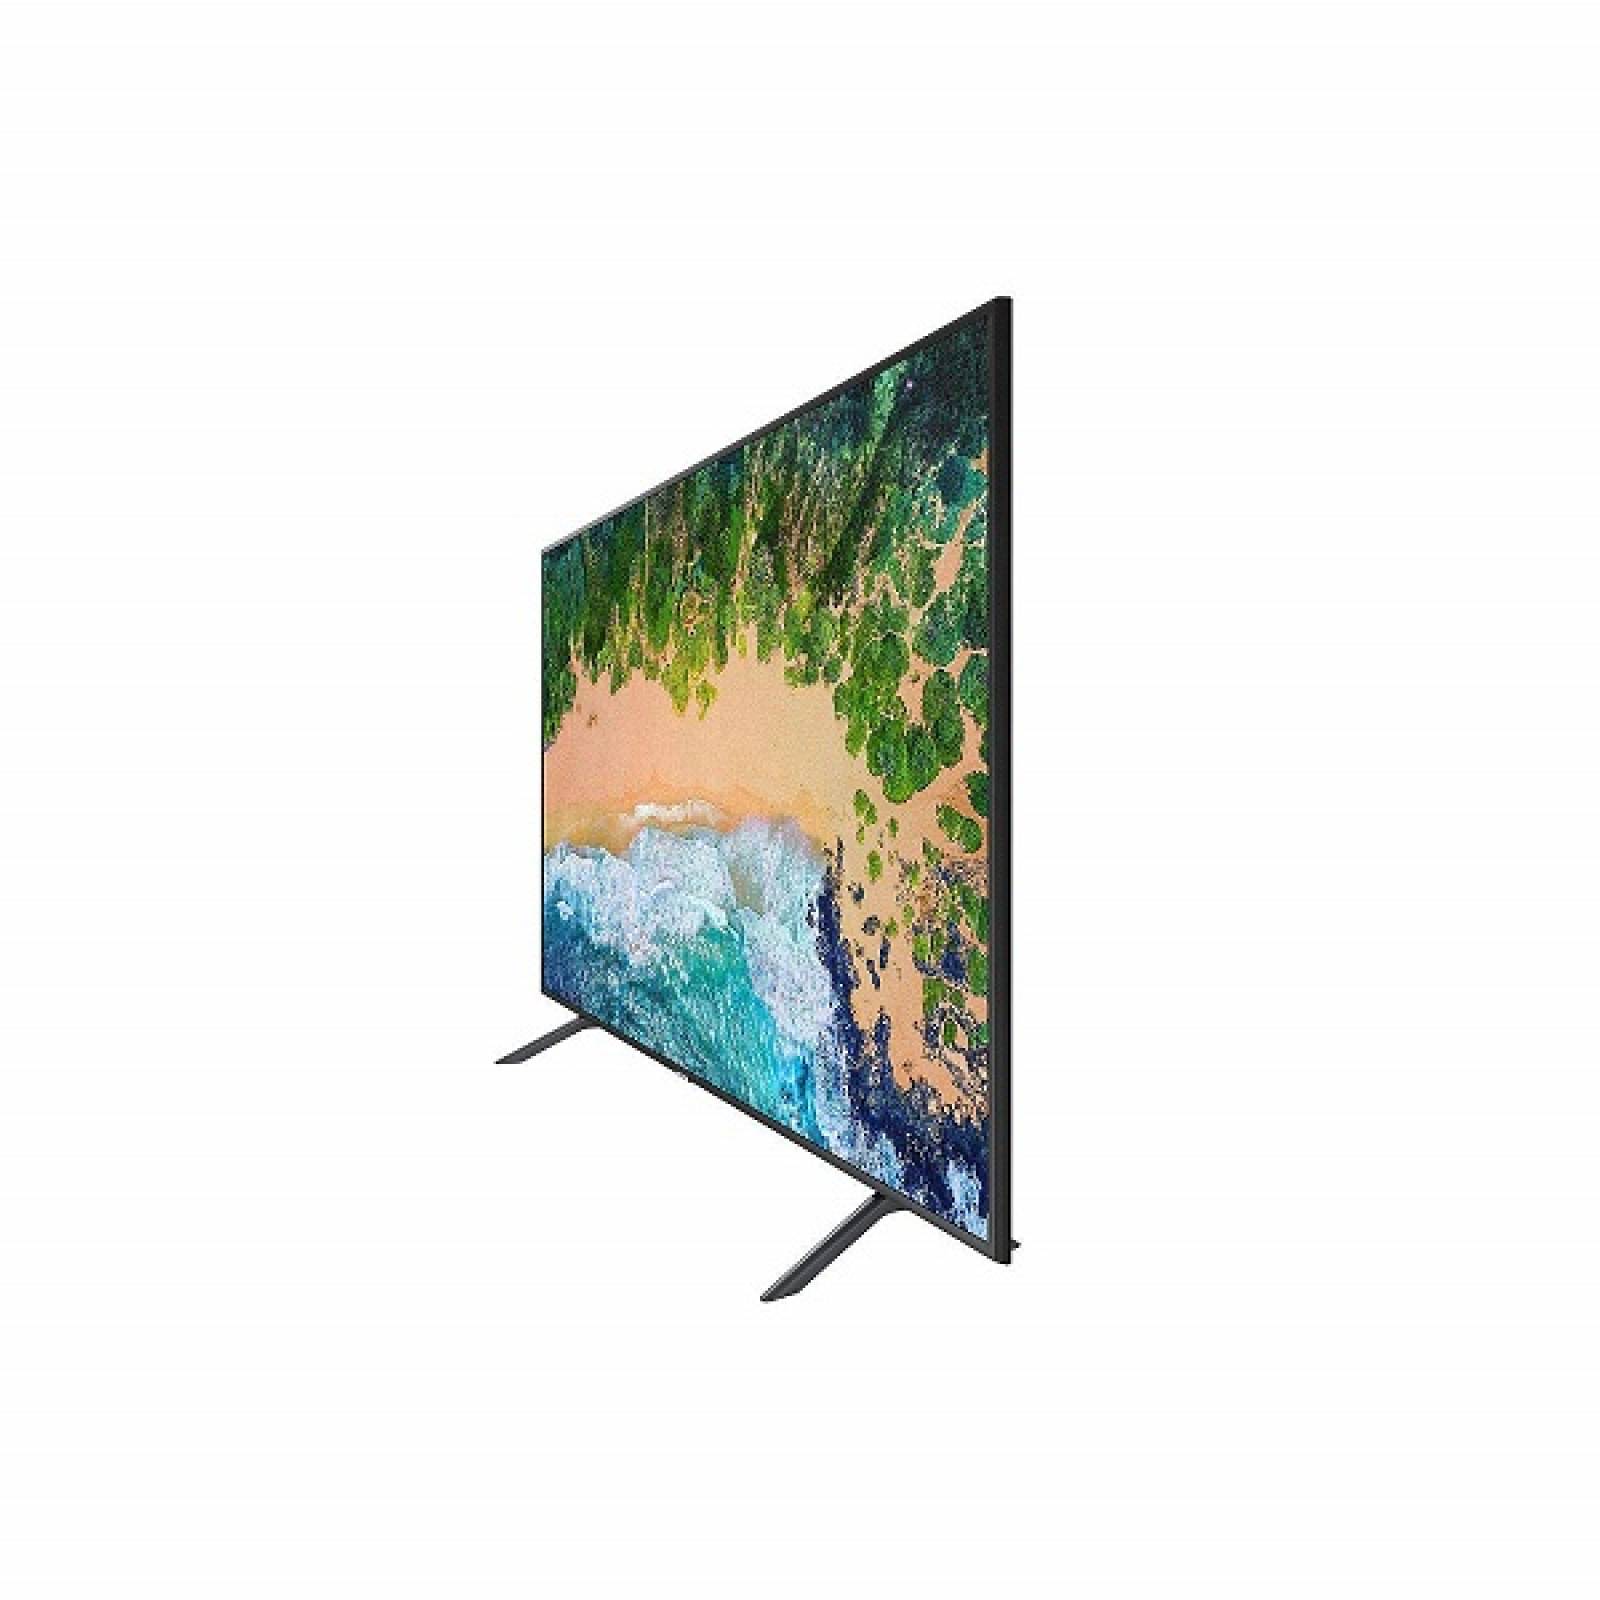 Smart TV 58 Samsung LED 4K UHD HDR USB HDMI UN58NU710DFXZA - Reacondicionado